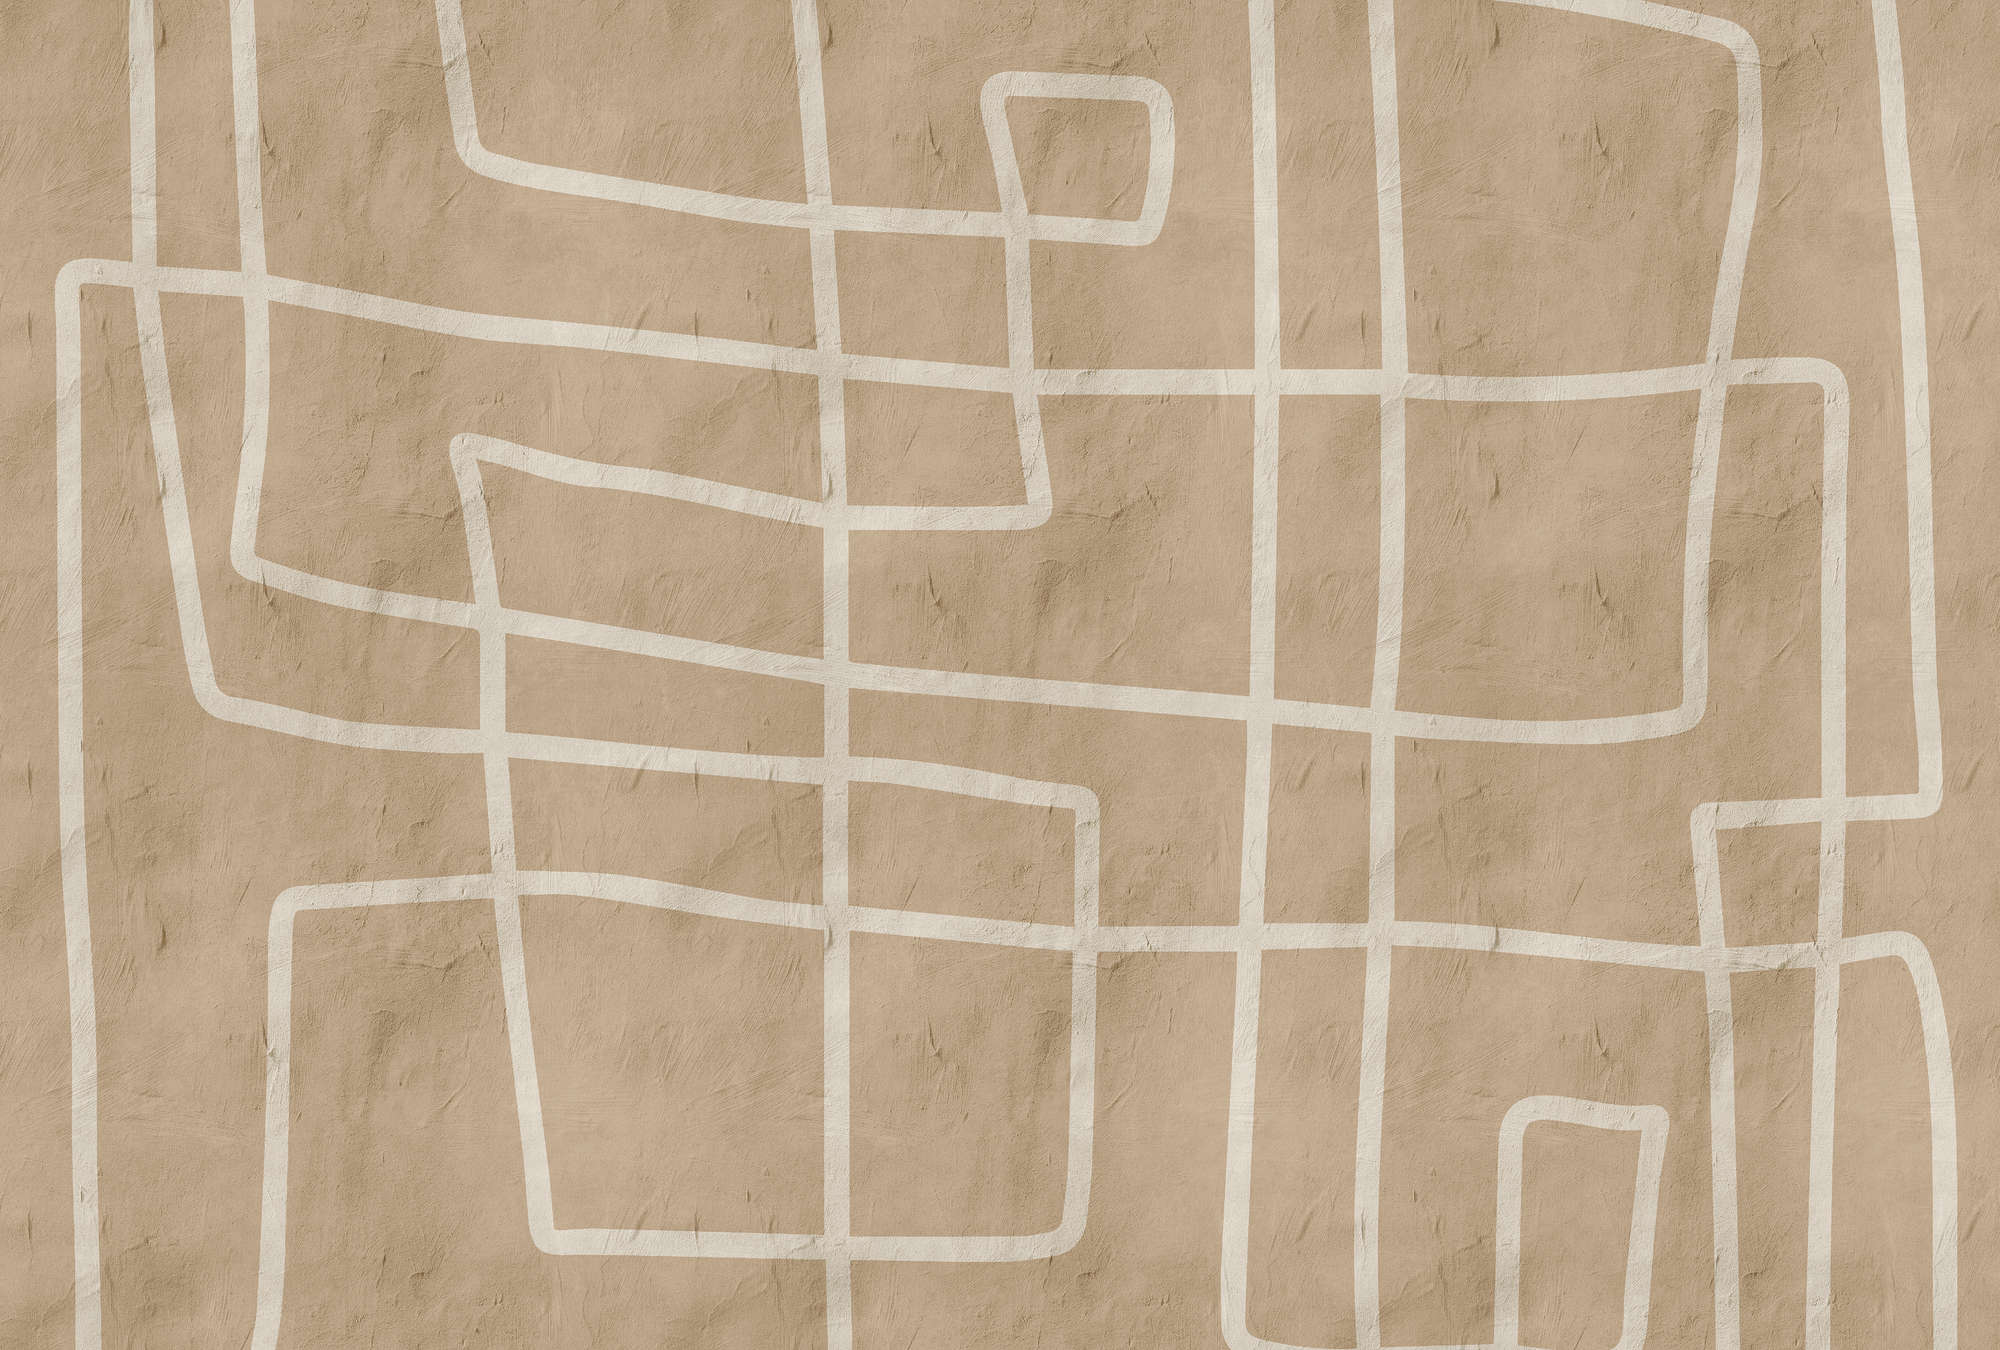             Serengeti 1 - Papier peint panoramique mur d'argile avec motif de lignes ethniques en beige
        